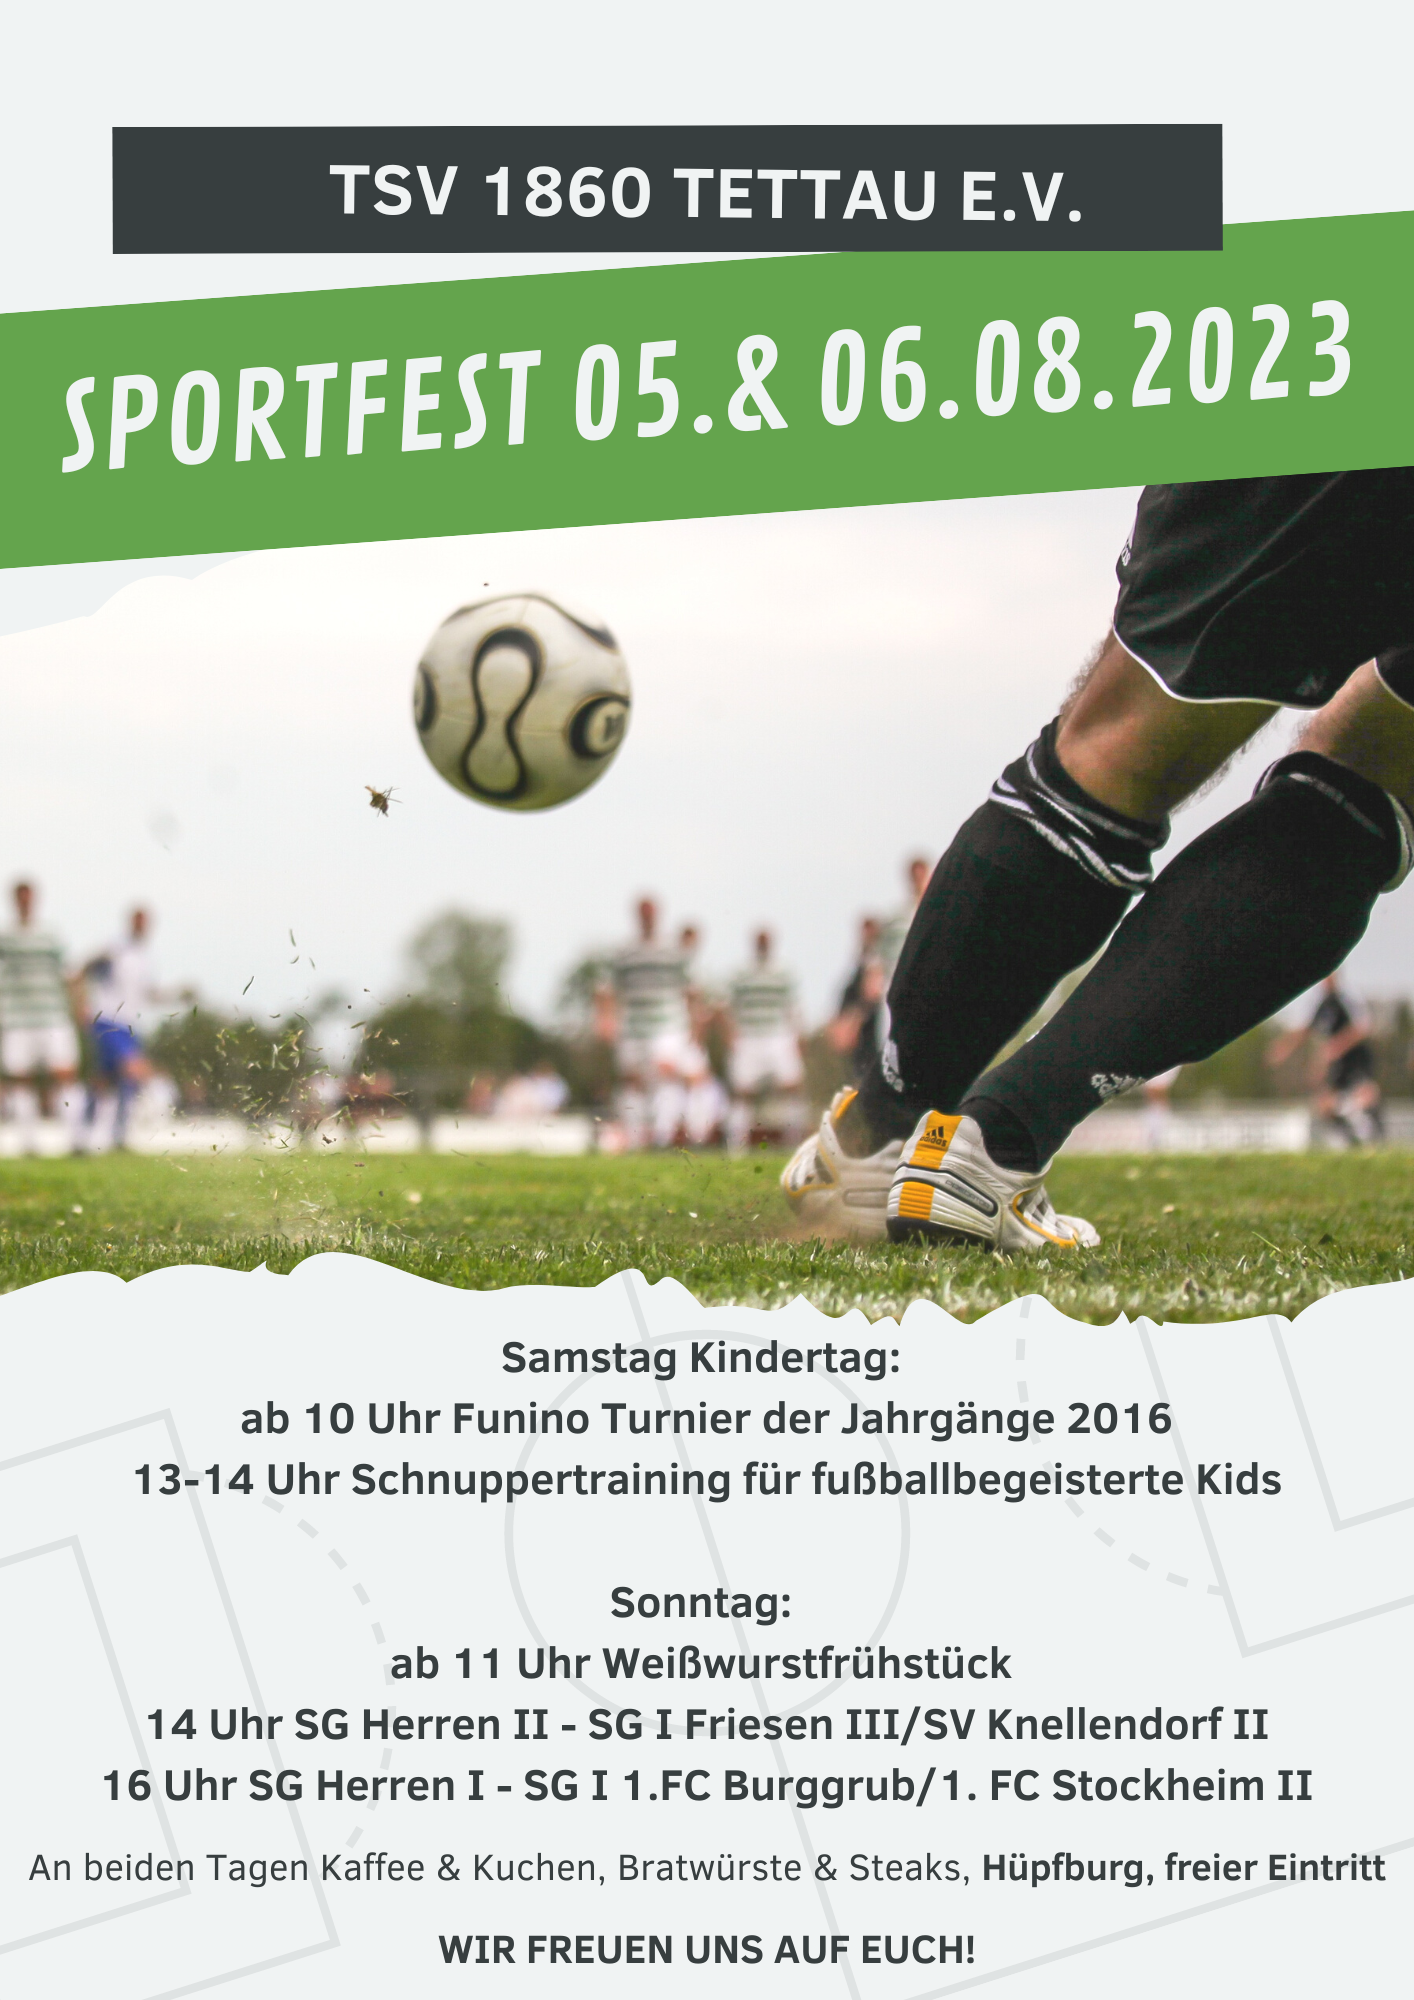 Sportfest beim TSV – herzliche Einladung